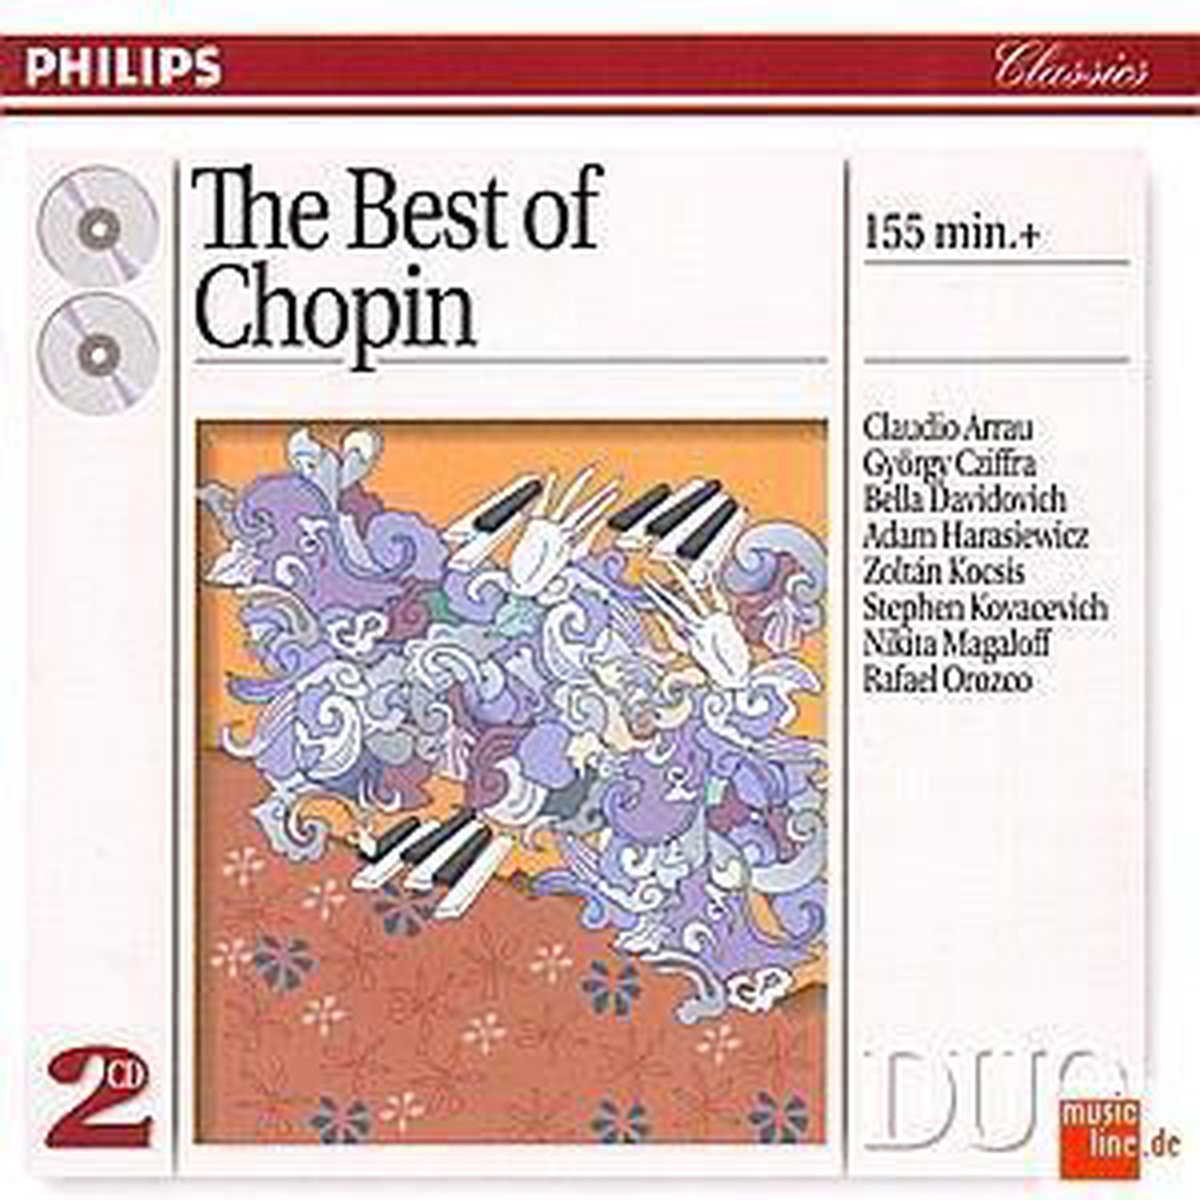 The Best of Chopin / Arrau, Cziffra, Davidovich, et al